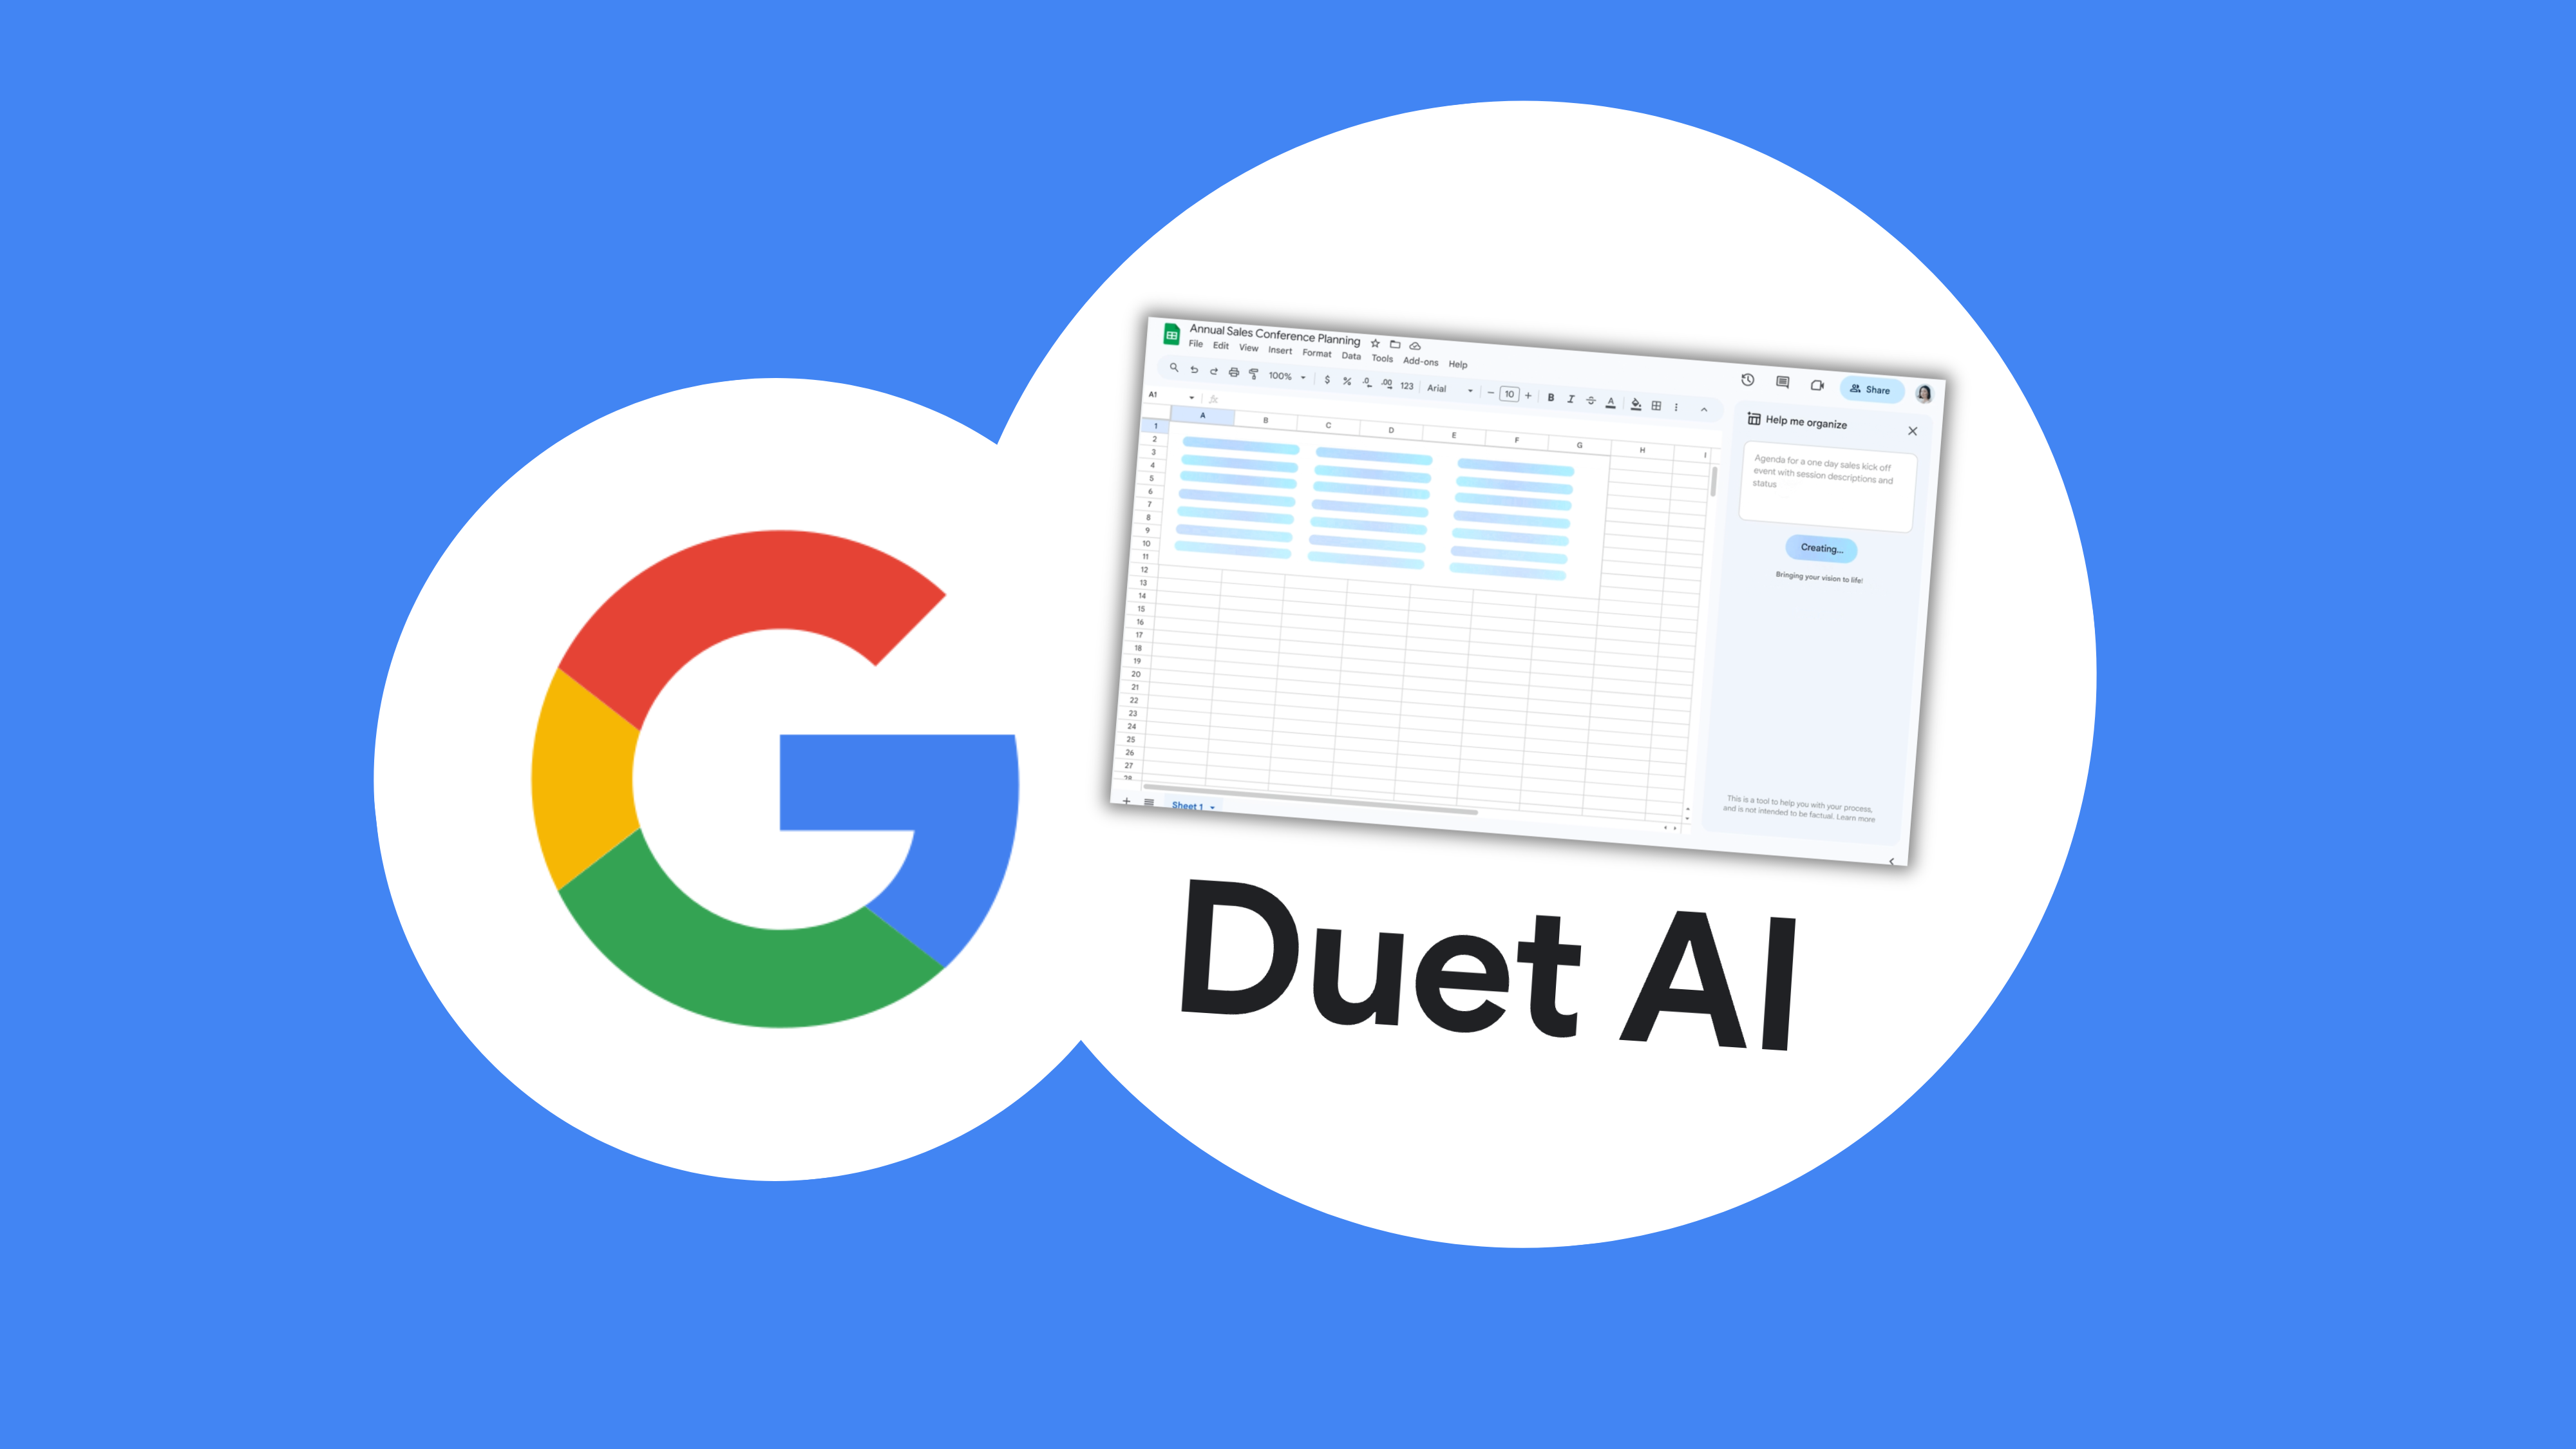 Qué es y cómo funciona Duet IA, el asistente de Google para el trabajo -  Infobae